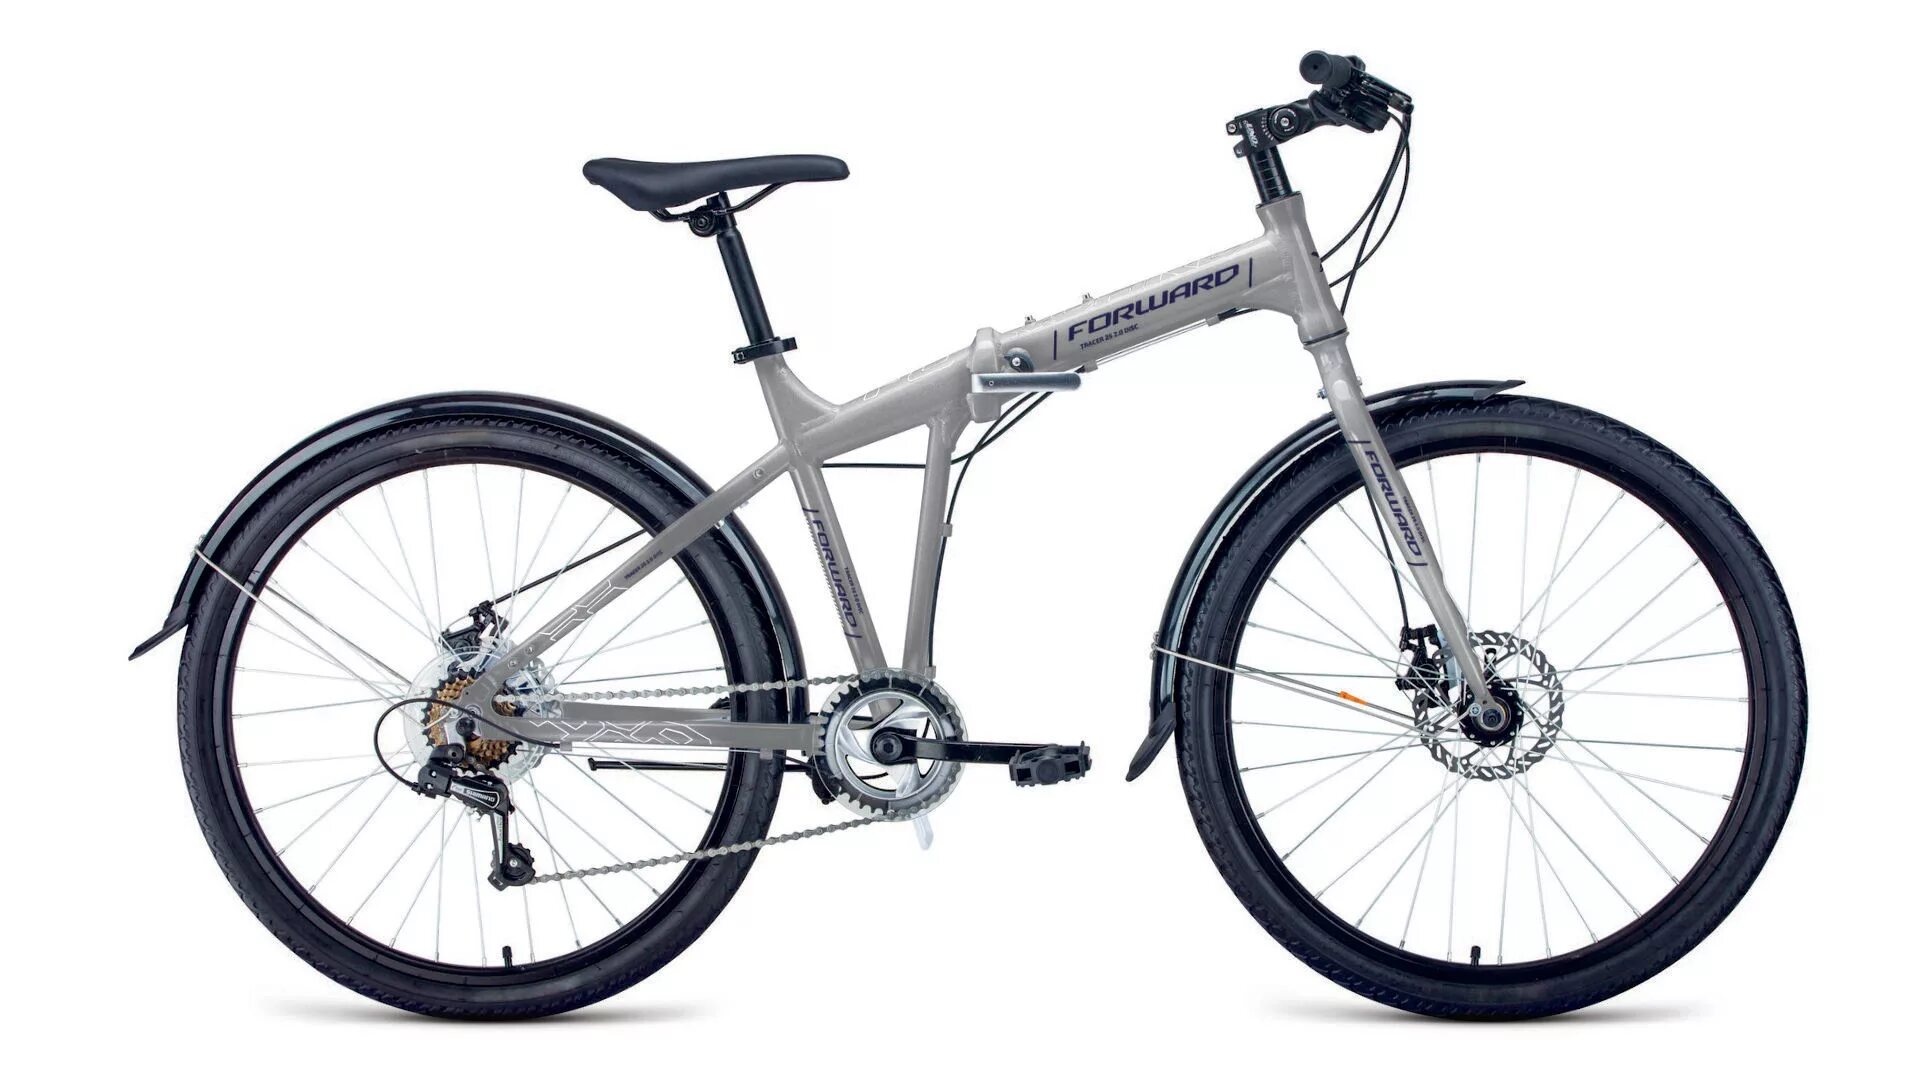 Дорожный велосипед 26 колеса. Forward Tracer 26 3.0. Велосипед Кобра Старк складной 29. Велосипед forward Tracer 1.0.